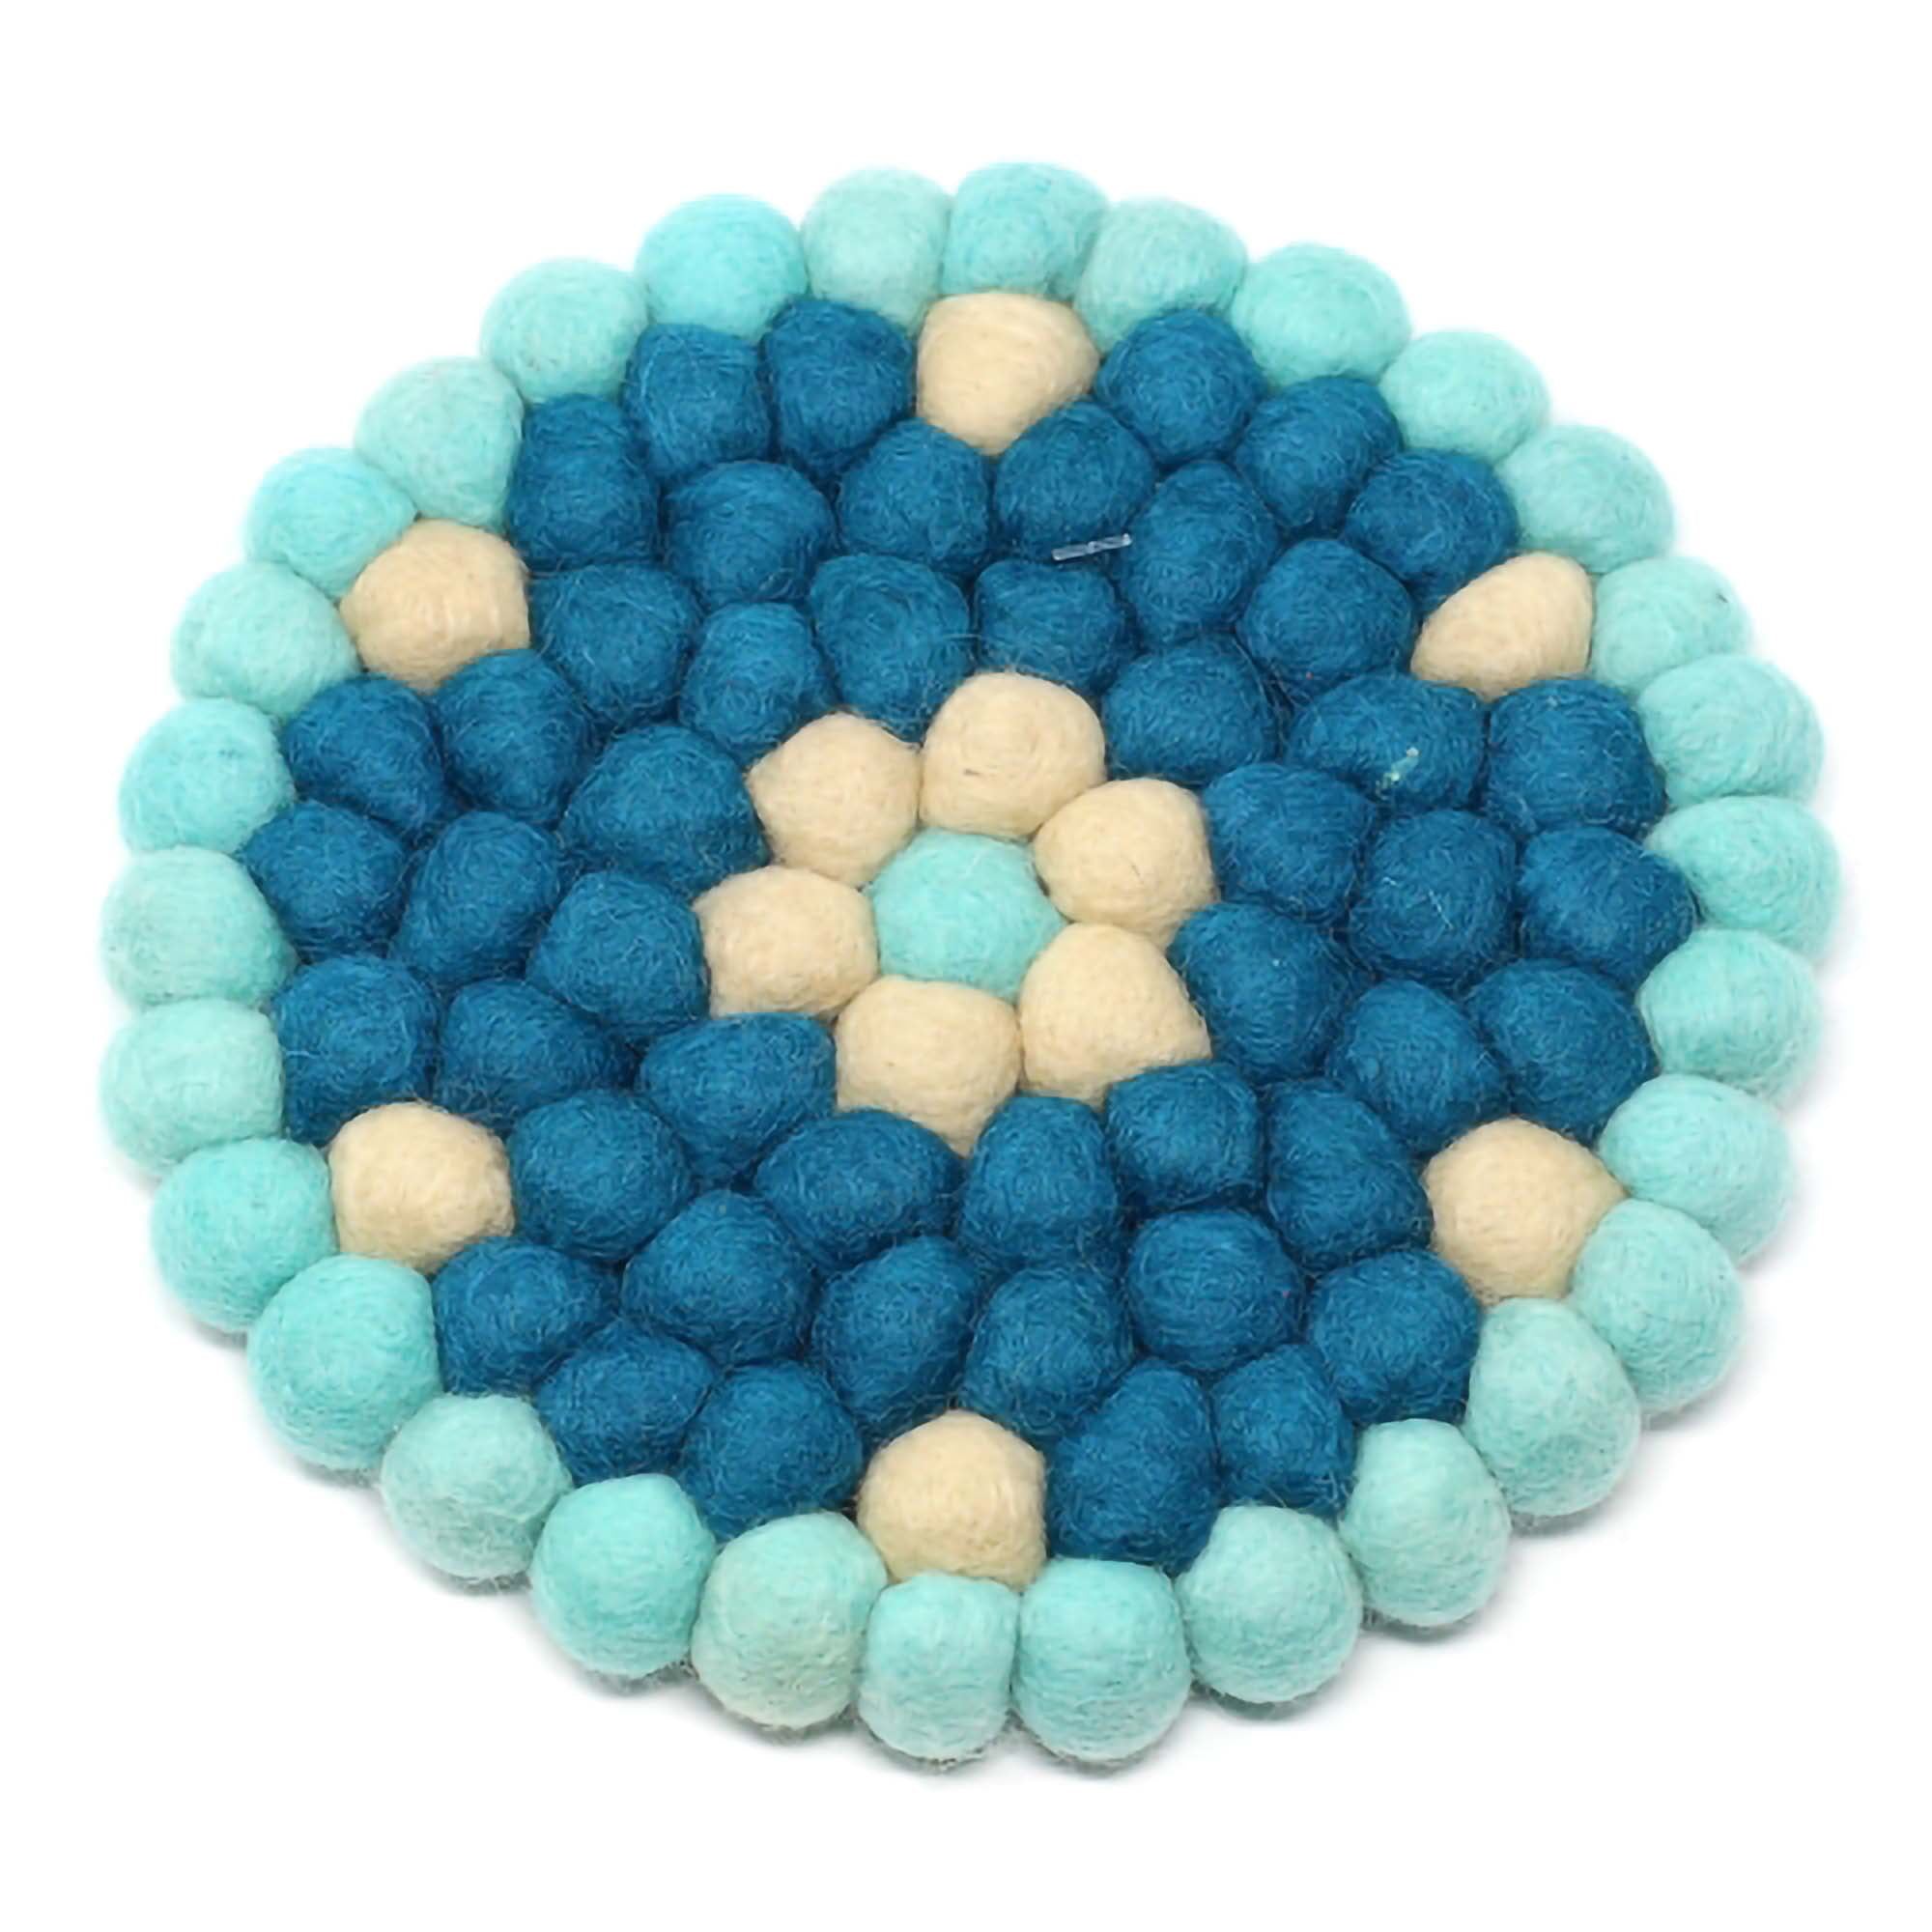 Felt Ball Trivets: Round Flower Design, Turquoise